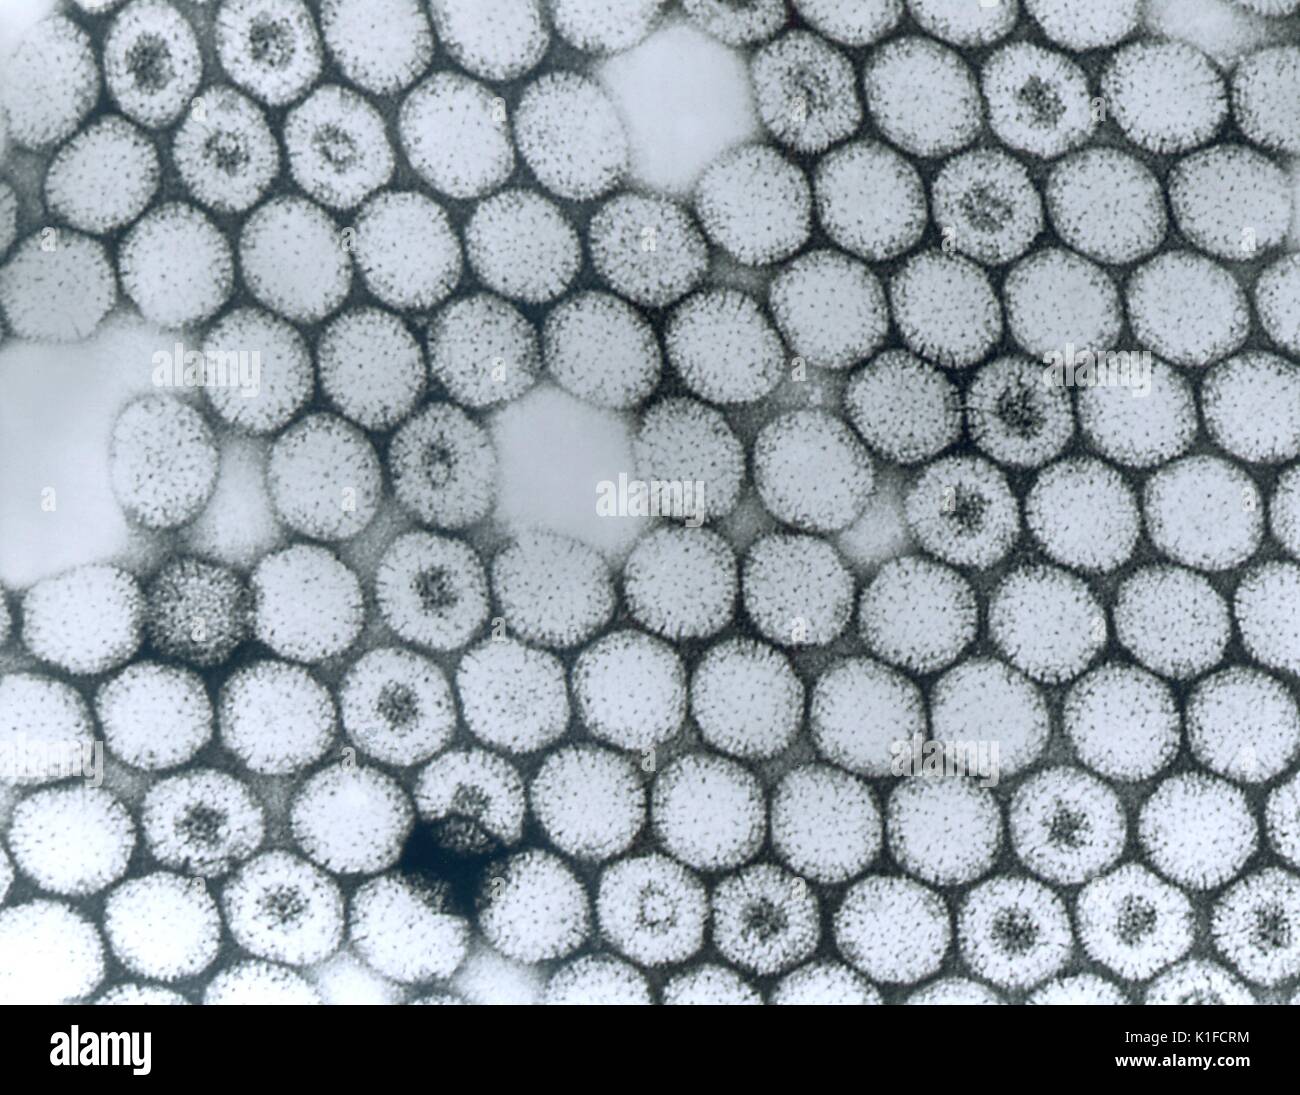 Diese Transmission Electron Micrograph (TEM) dargestellten Zahlen des reovirus Typ 3 Virionen. Transmission Electron Micrograph des reovirus Typ 3. Sowohl die inneren als auch die äußeren capsid Tanks vorhanden sind. Einige Virionen sind durch negative Fleck eingedrungen. Bild mit freundlicher Genehmigung von CDC/Dr. Erskine Palmer, 1981. Stockfoto